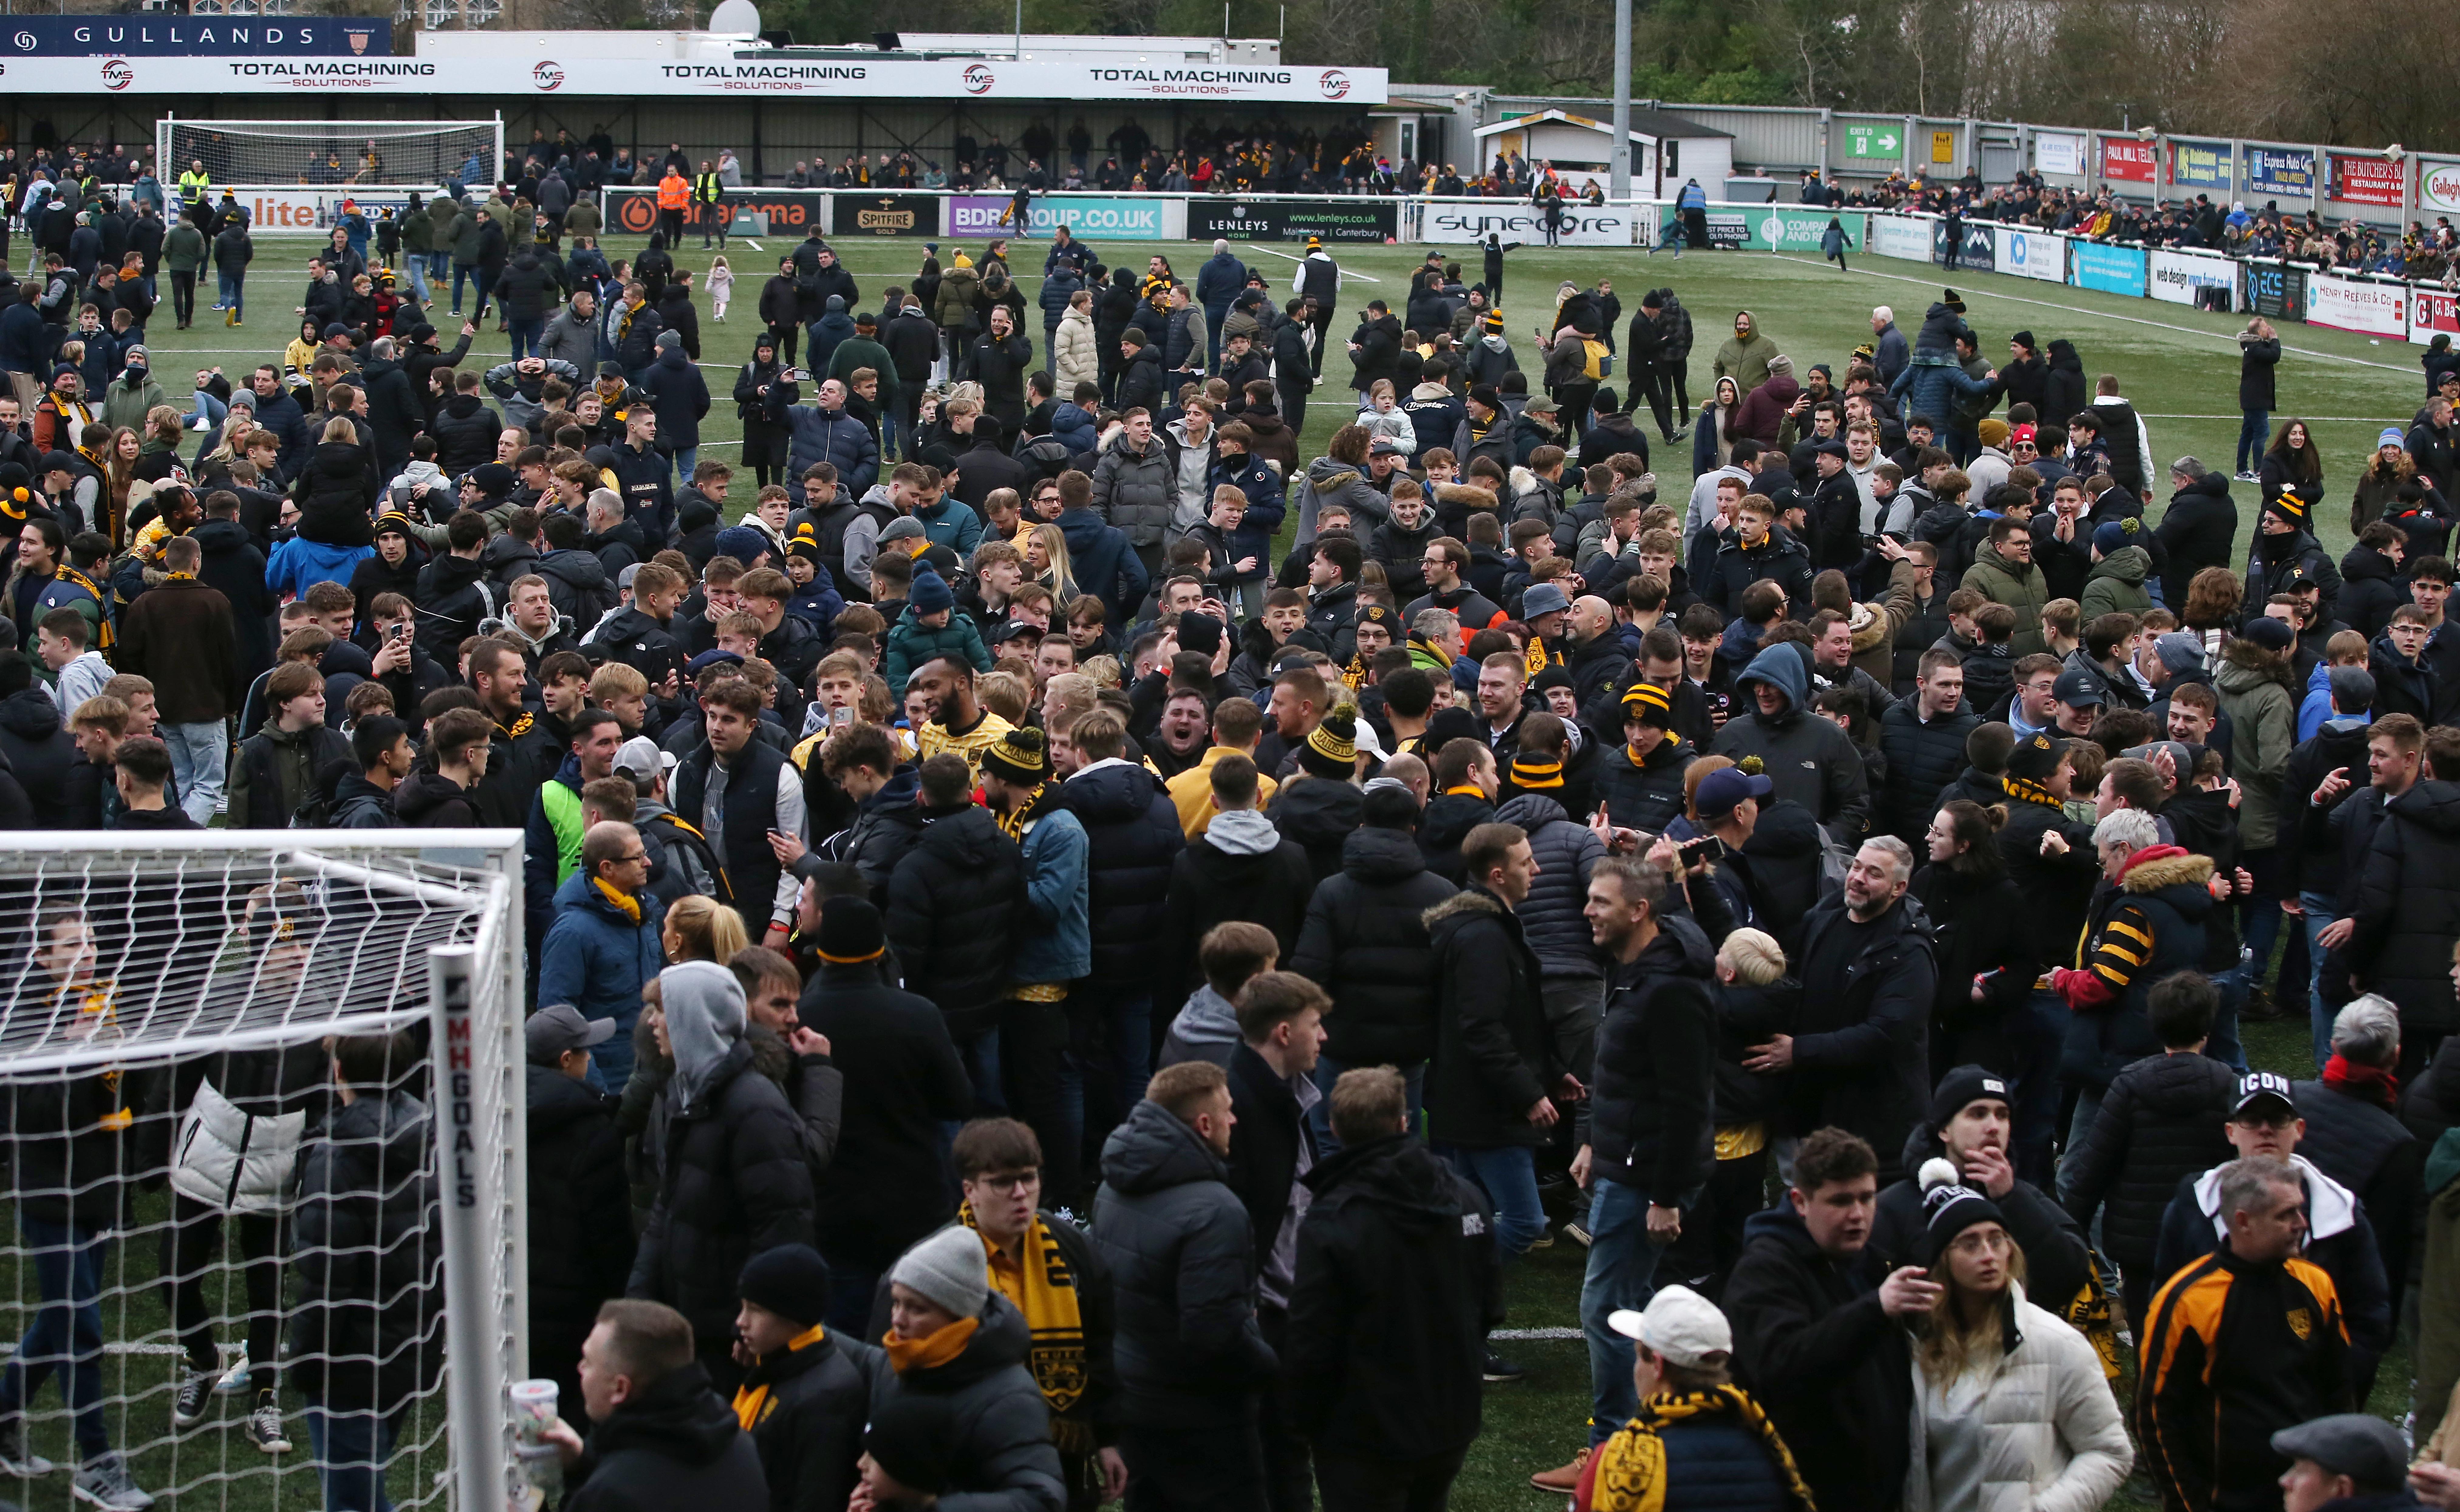 Rund 1.000 Maidstone-Fans strömen nach dem historischen Sieg vor Freude über das Spielfeld